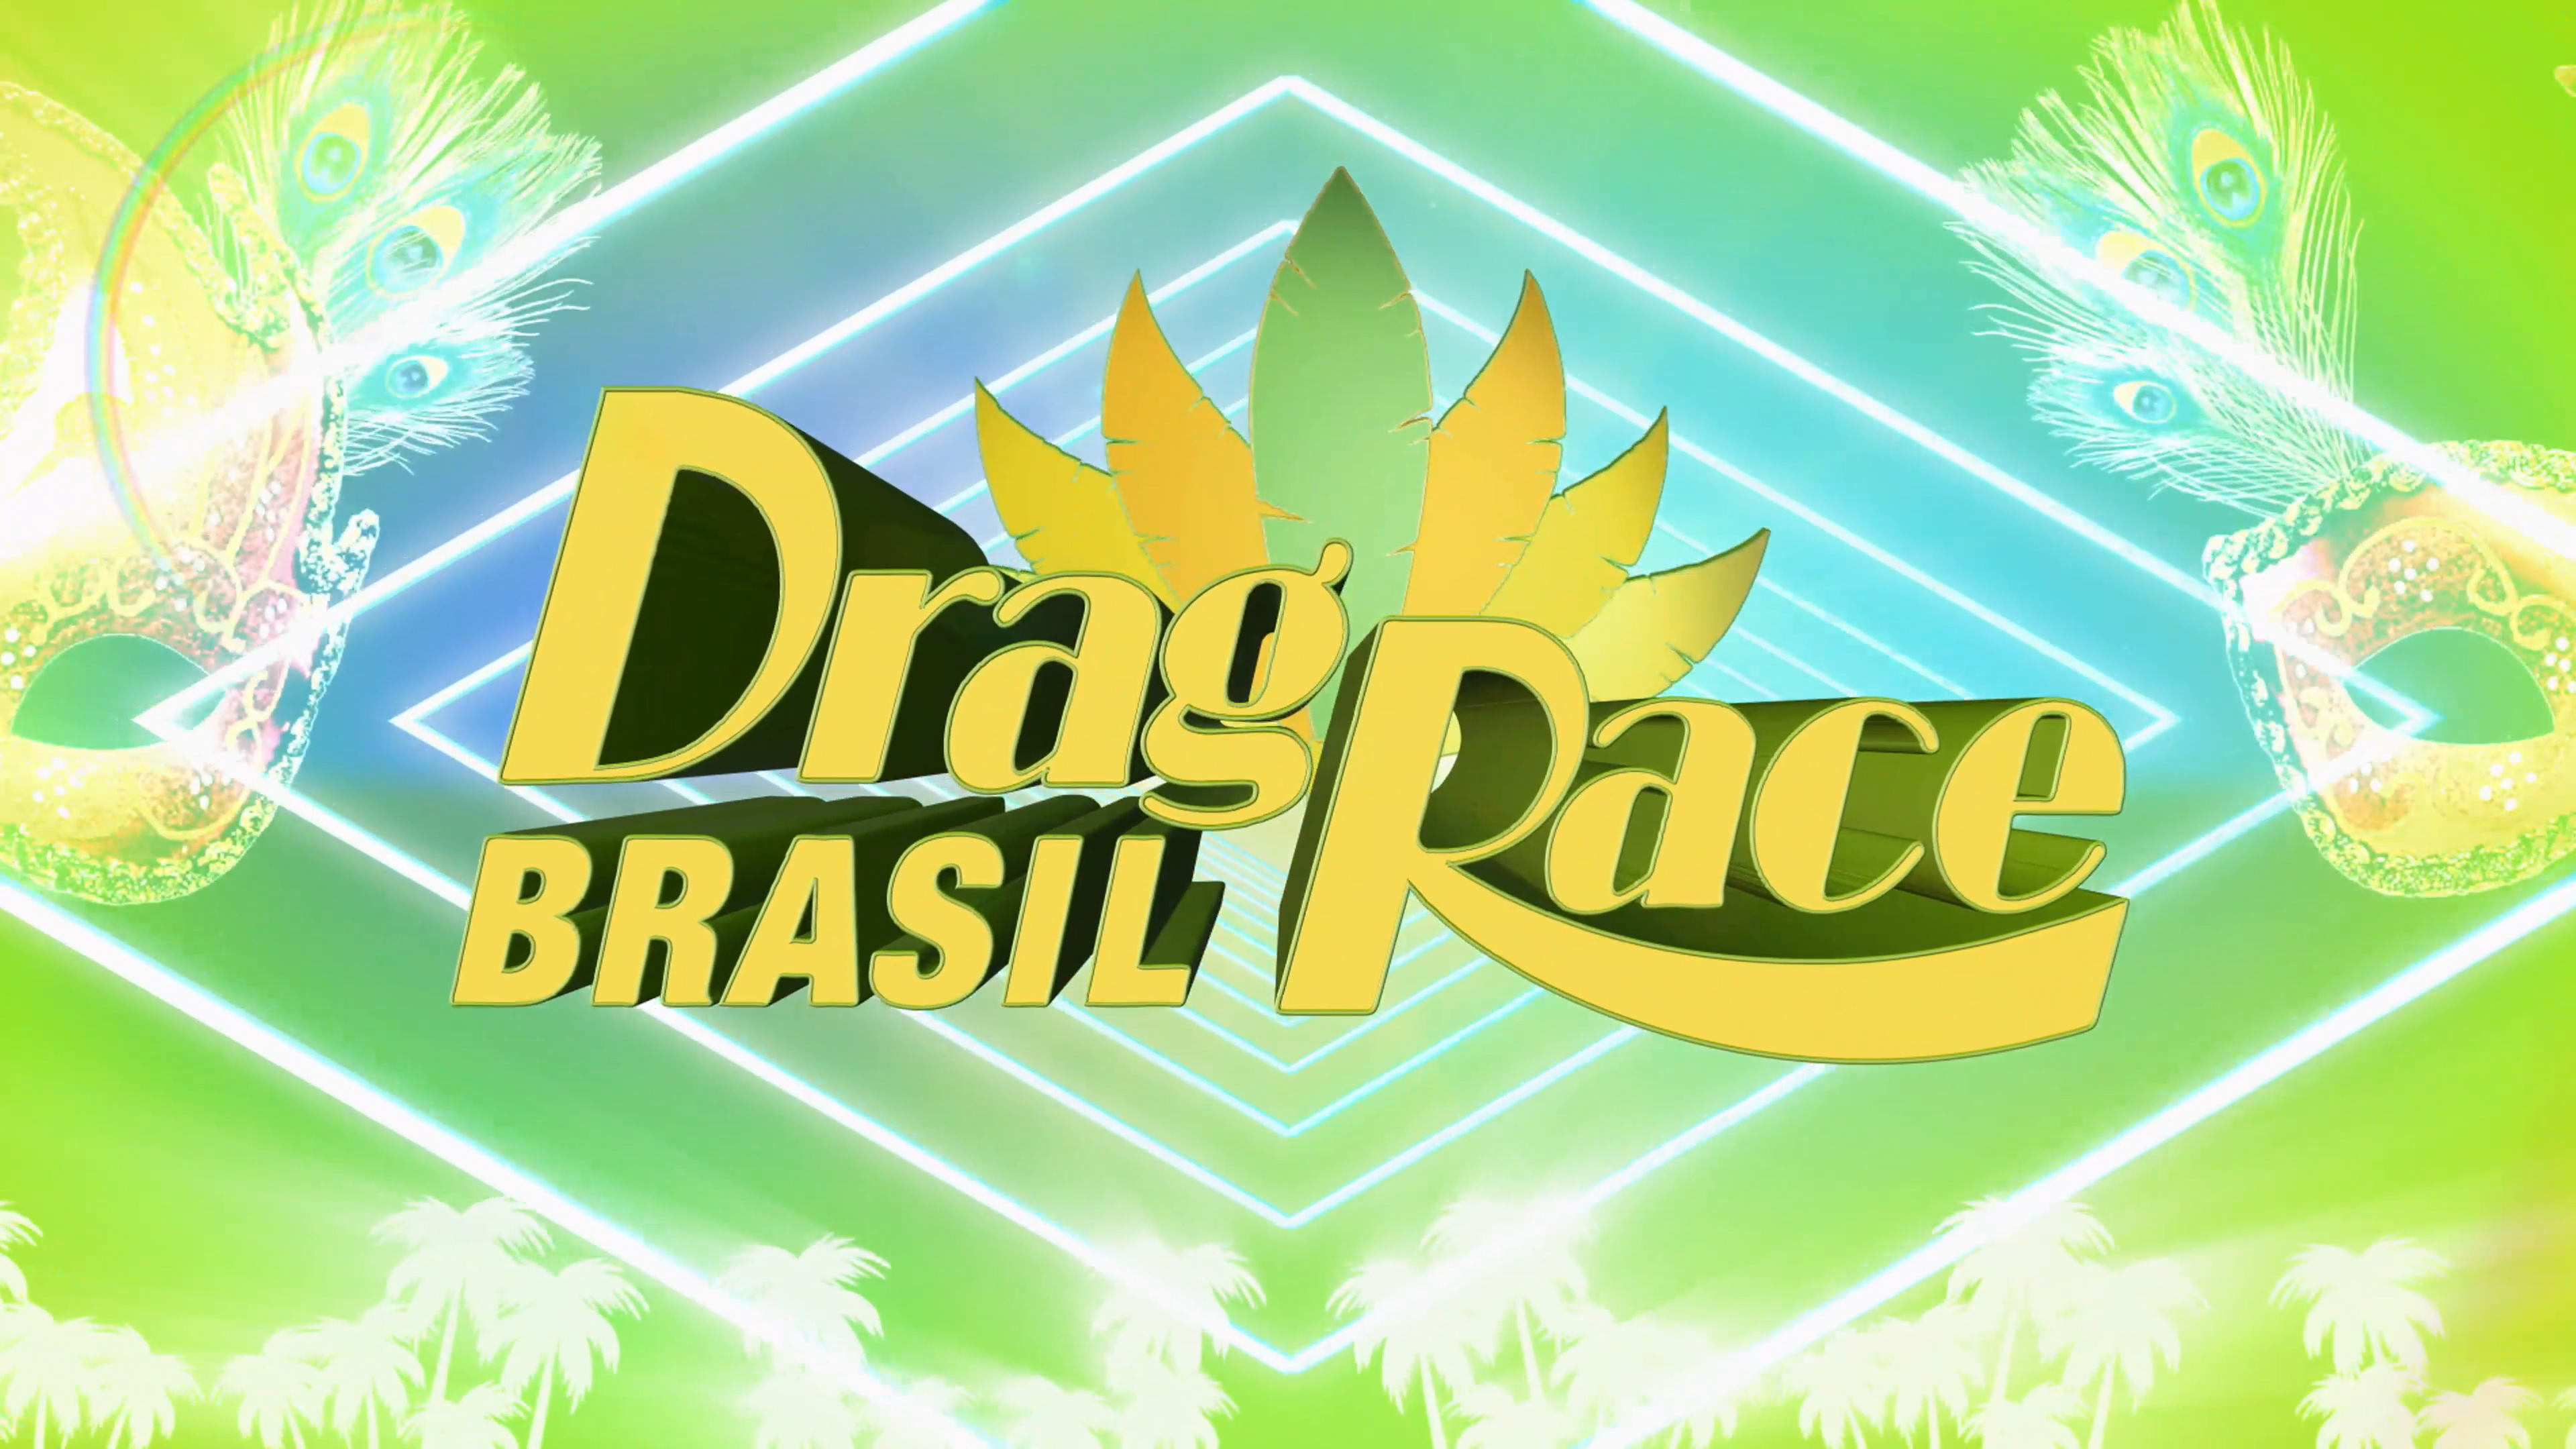 Drag Race Brasil - Wikipedia